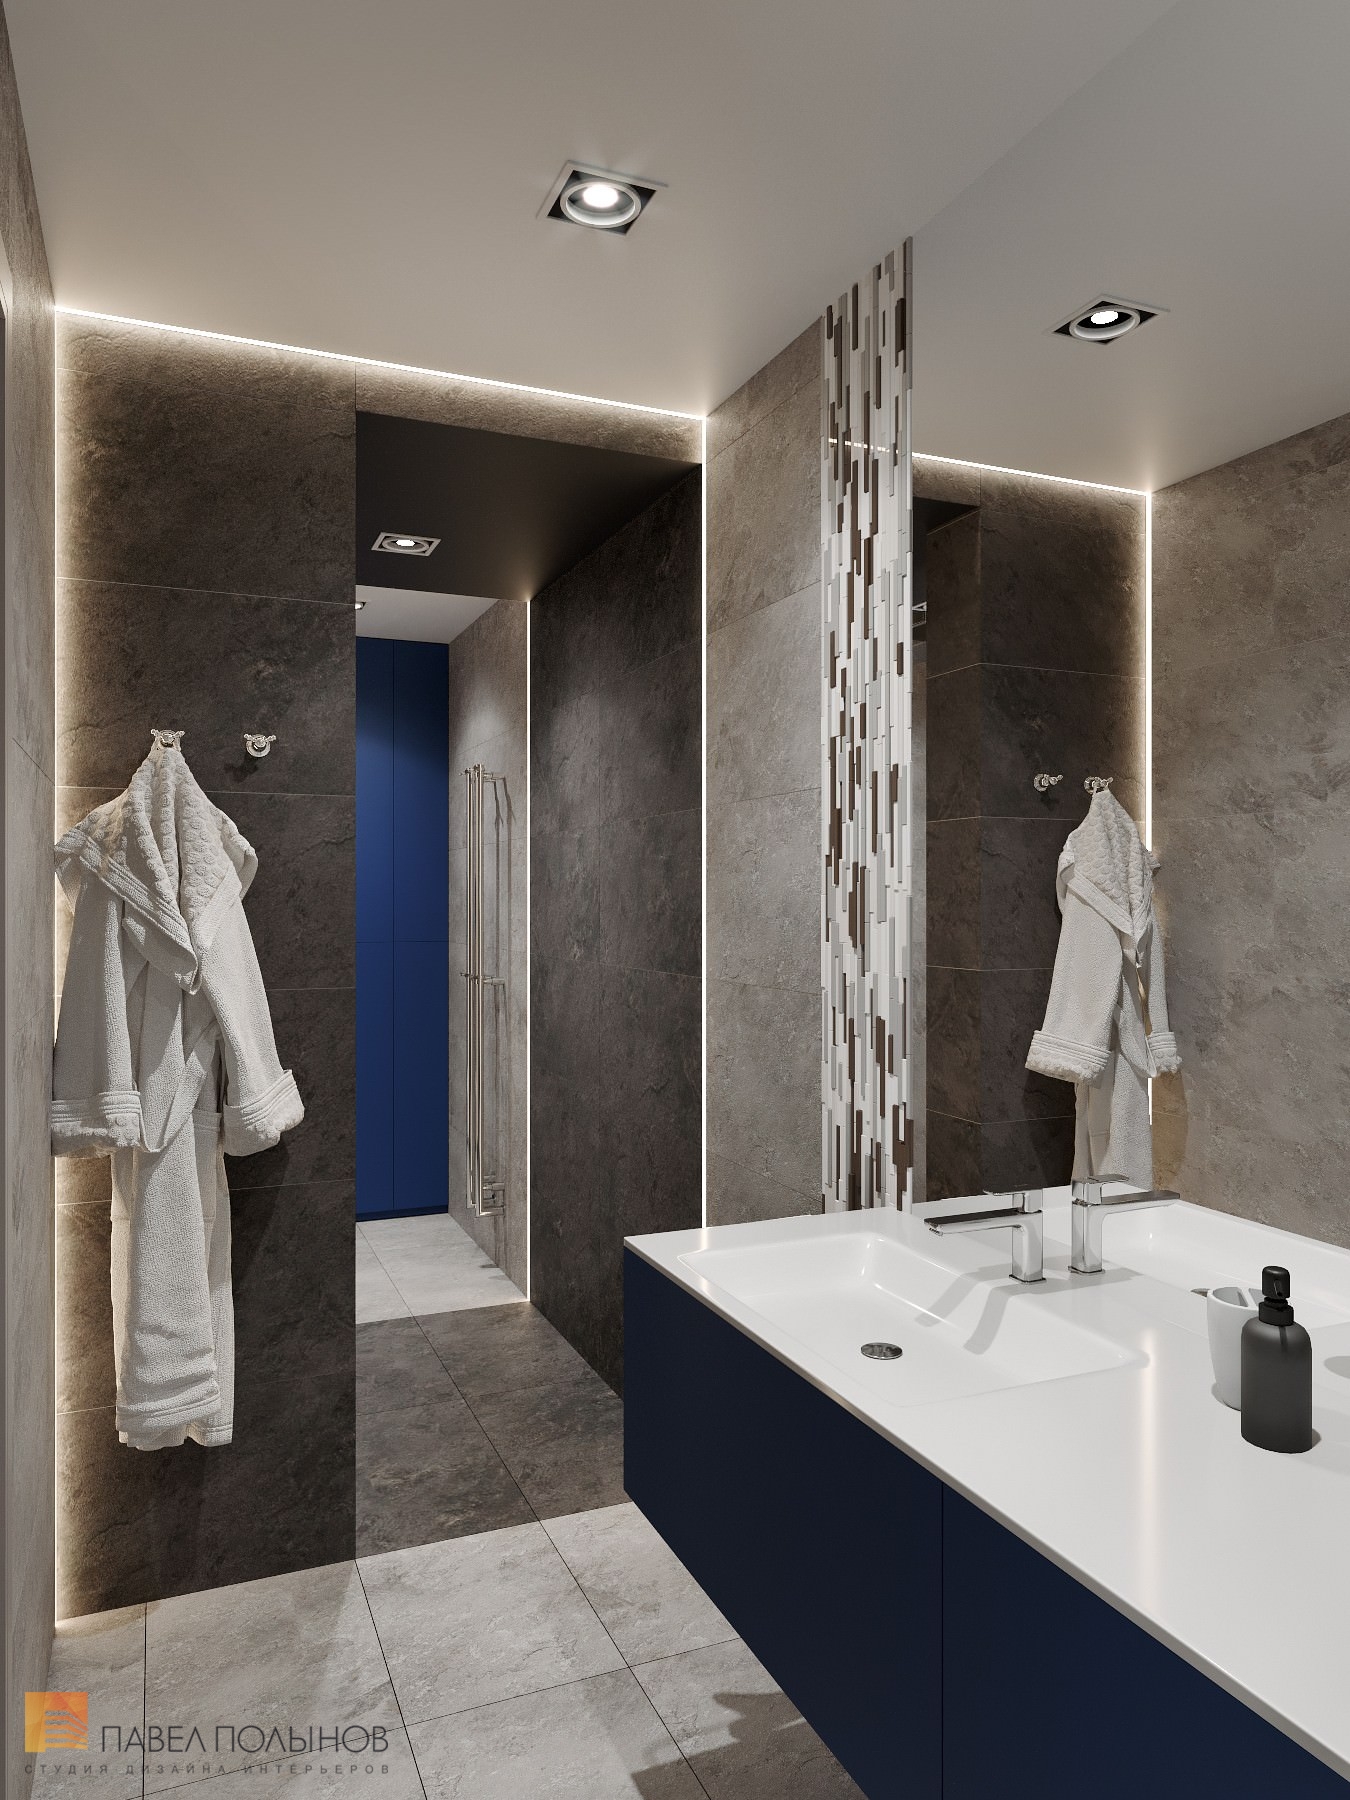 Фото дизайн ванной комнаты из проекта «Дизайн интерьер квартиры в ЖК «Кремлевские звезды», современный стиль, 133 кв.м.»